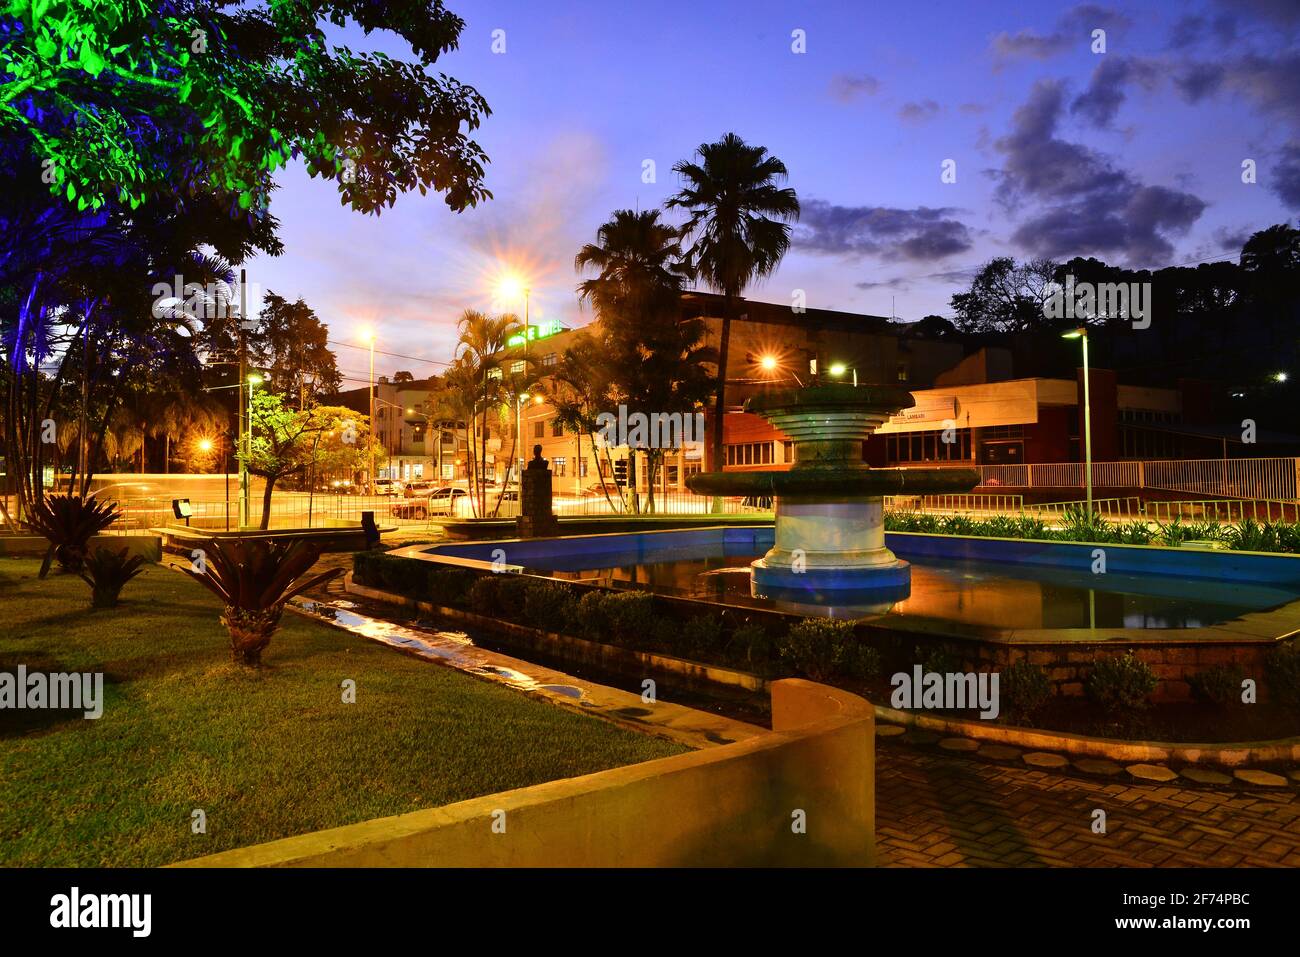 Lambari Stadt in Minas Gerais Estate, ein Ort berühmt durch sein Mineralwasser und ein beliebtes Ziel für Touristen, Brasilien Stockfoto